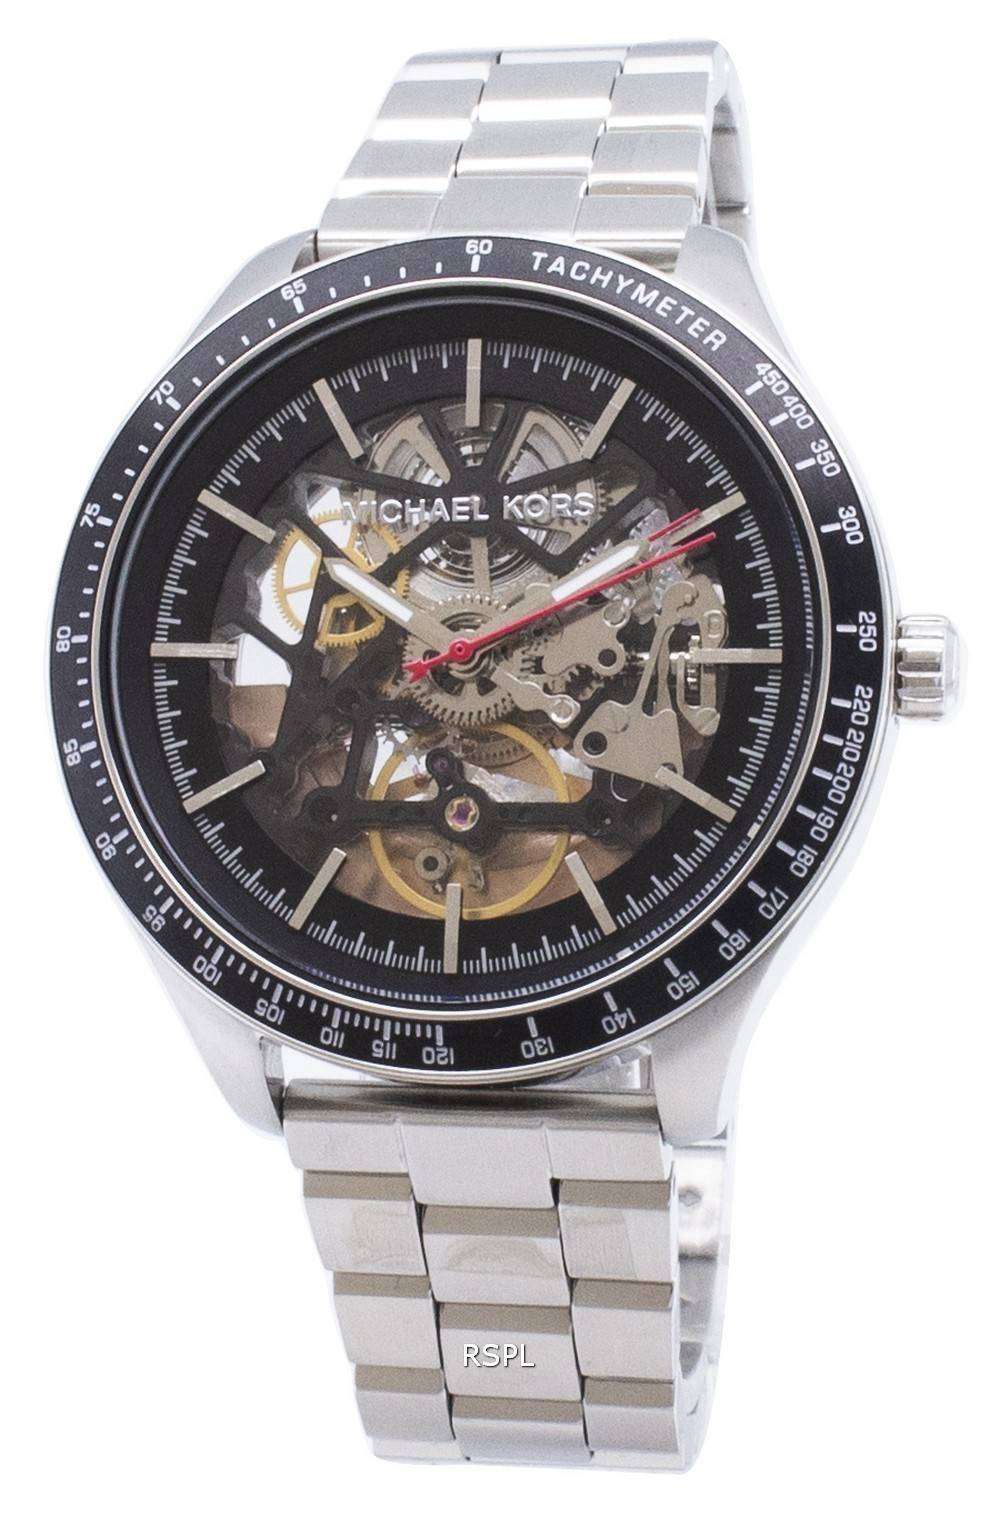 ミハエル Kors メリック MK9037 自動アナログ メンズ腕時計腕時計 Japan